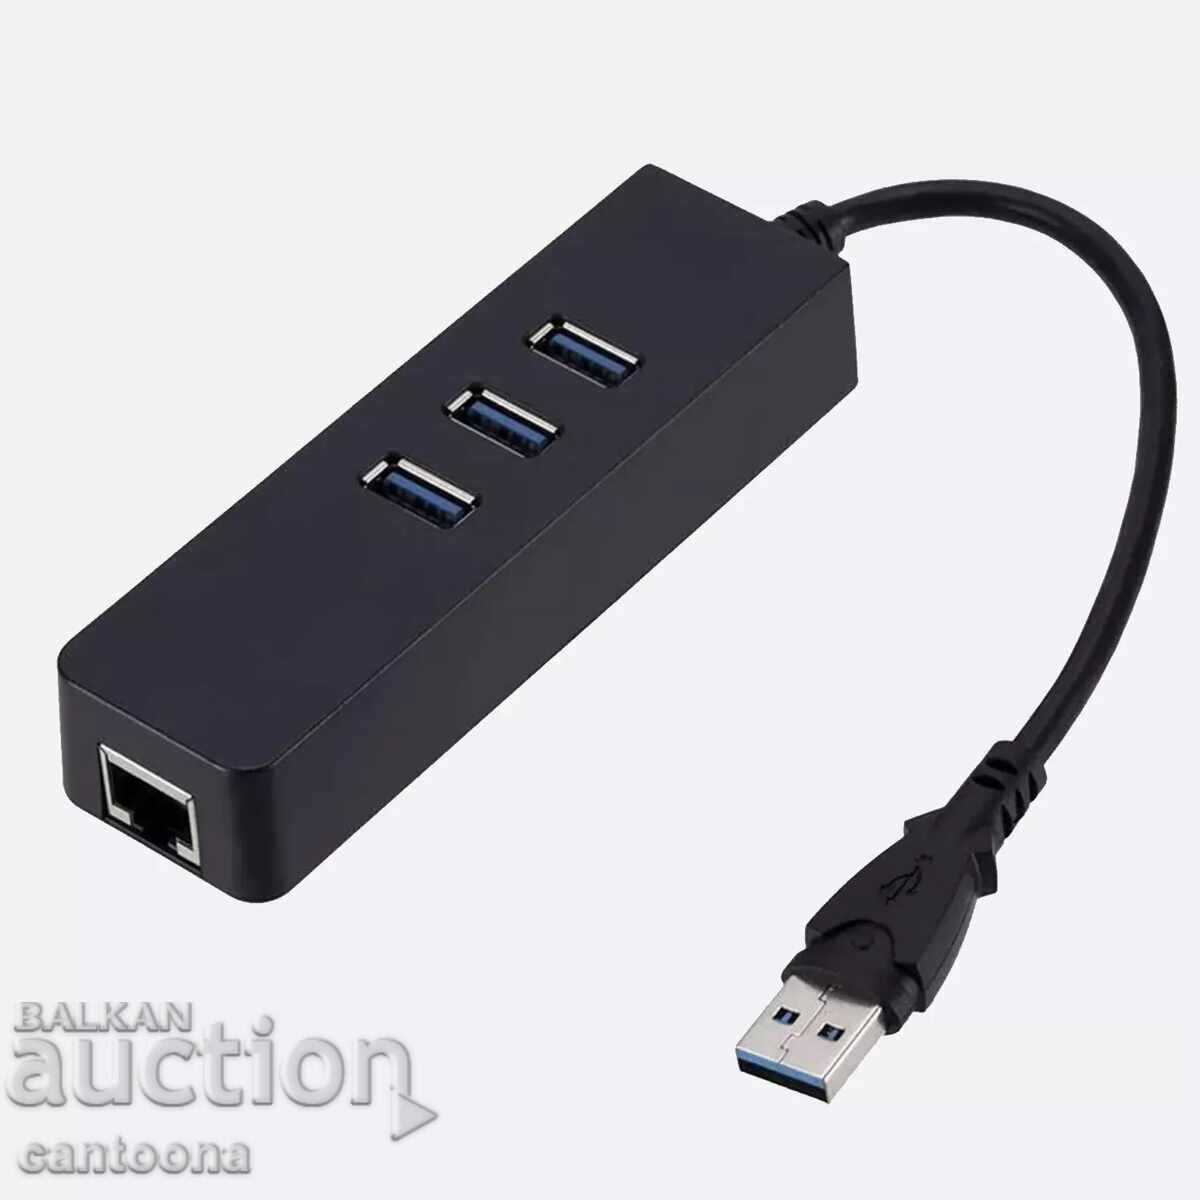 USB HUB με 3 θύρες USB 3.0 και Realtek Gbit LAN RJ45